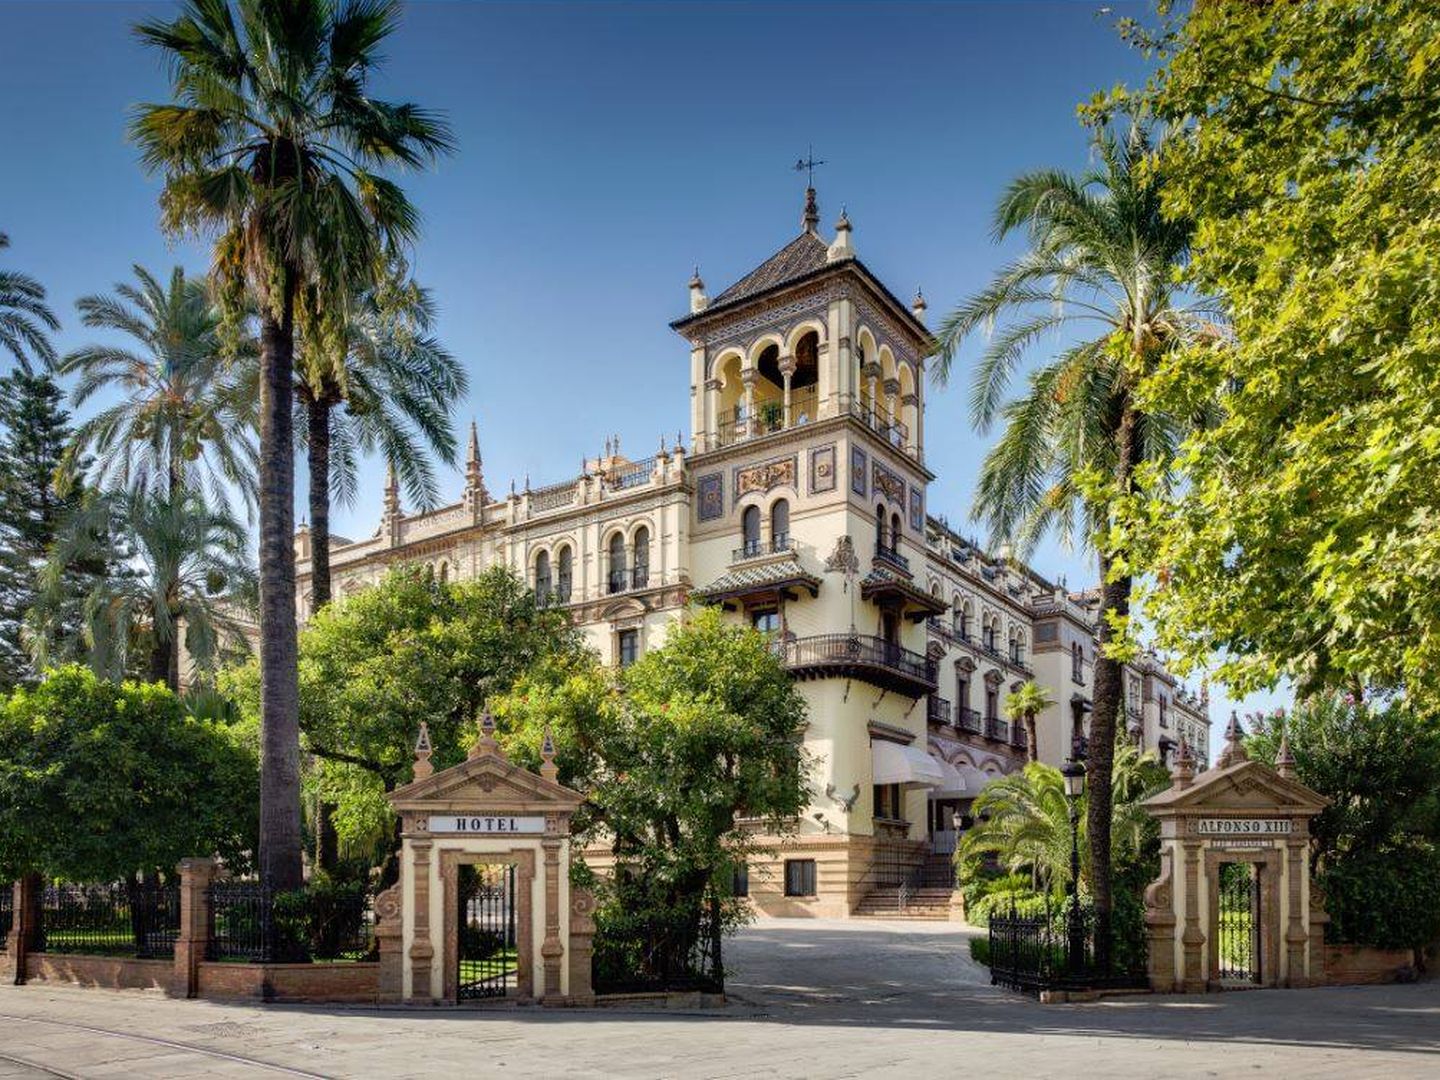 Fachada del hotel Alfonso XIII. (DR)